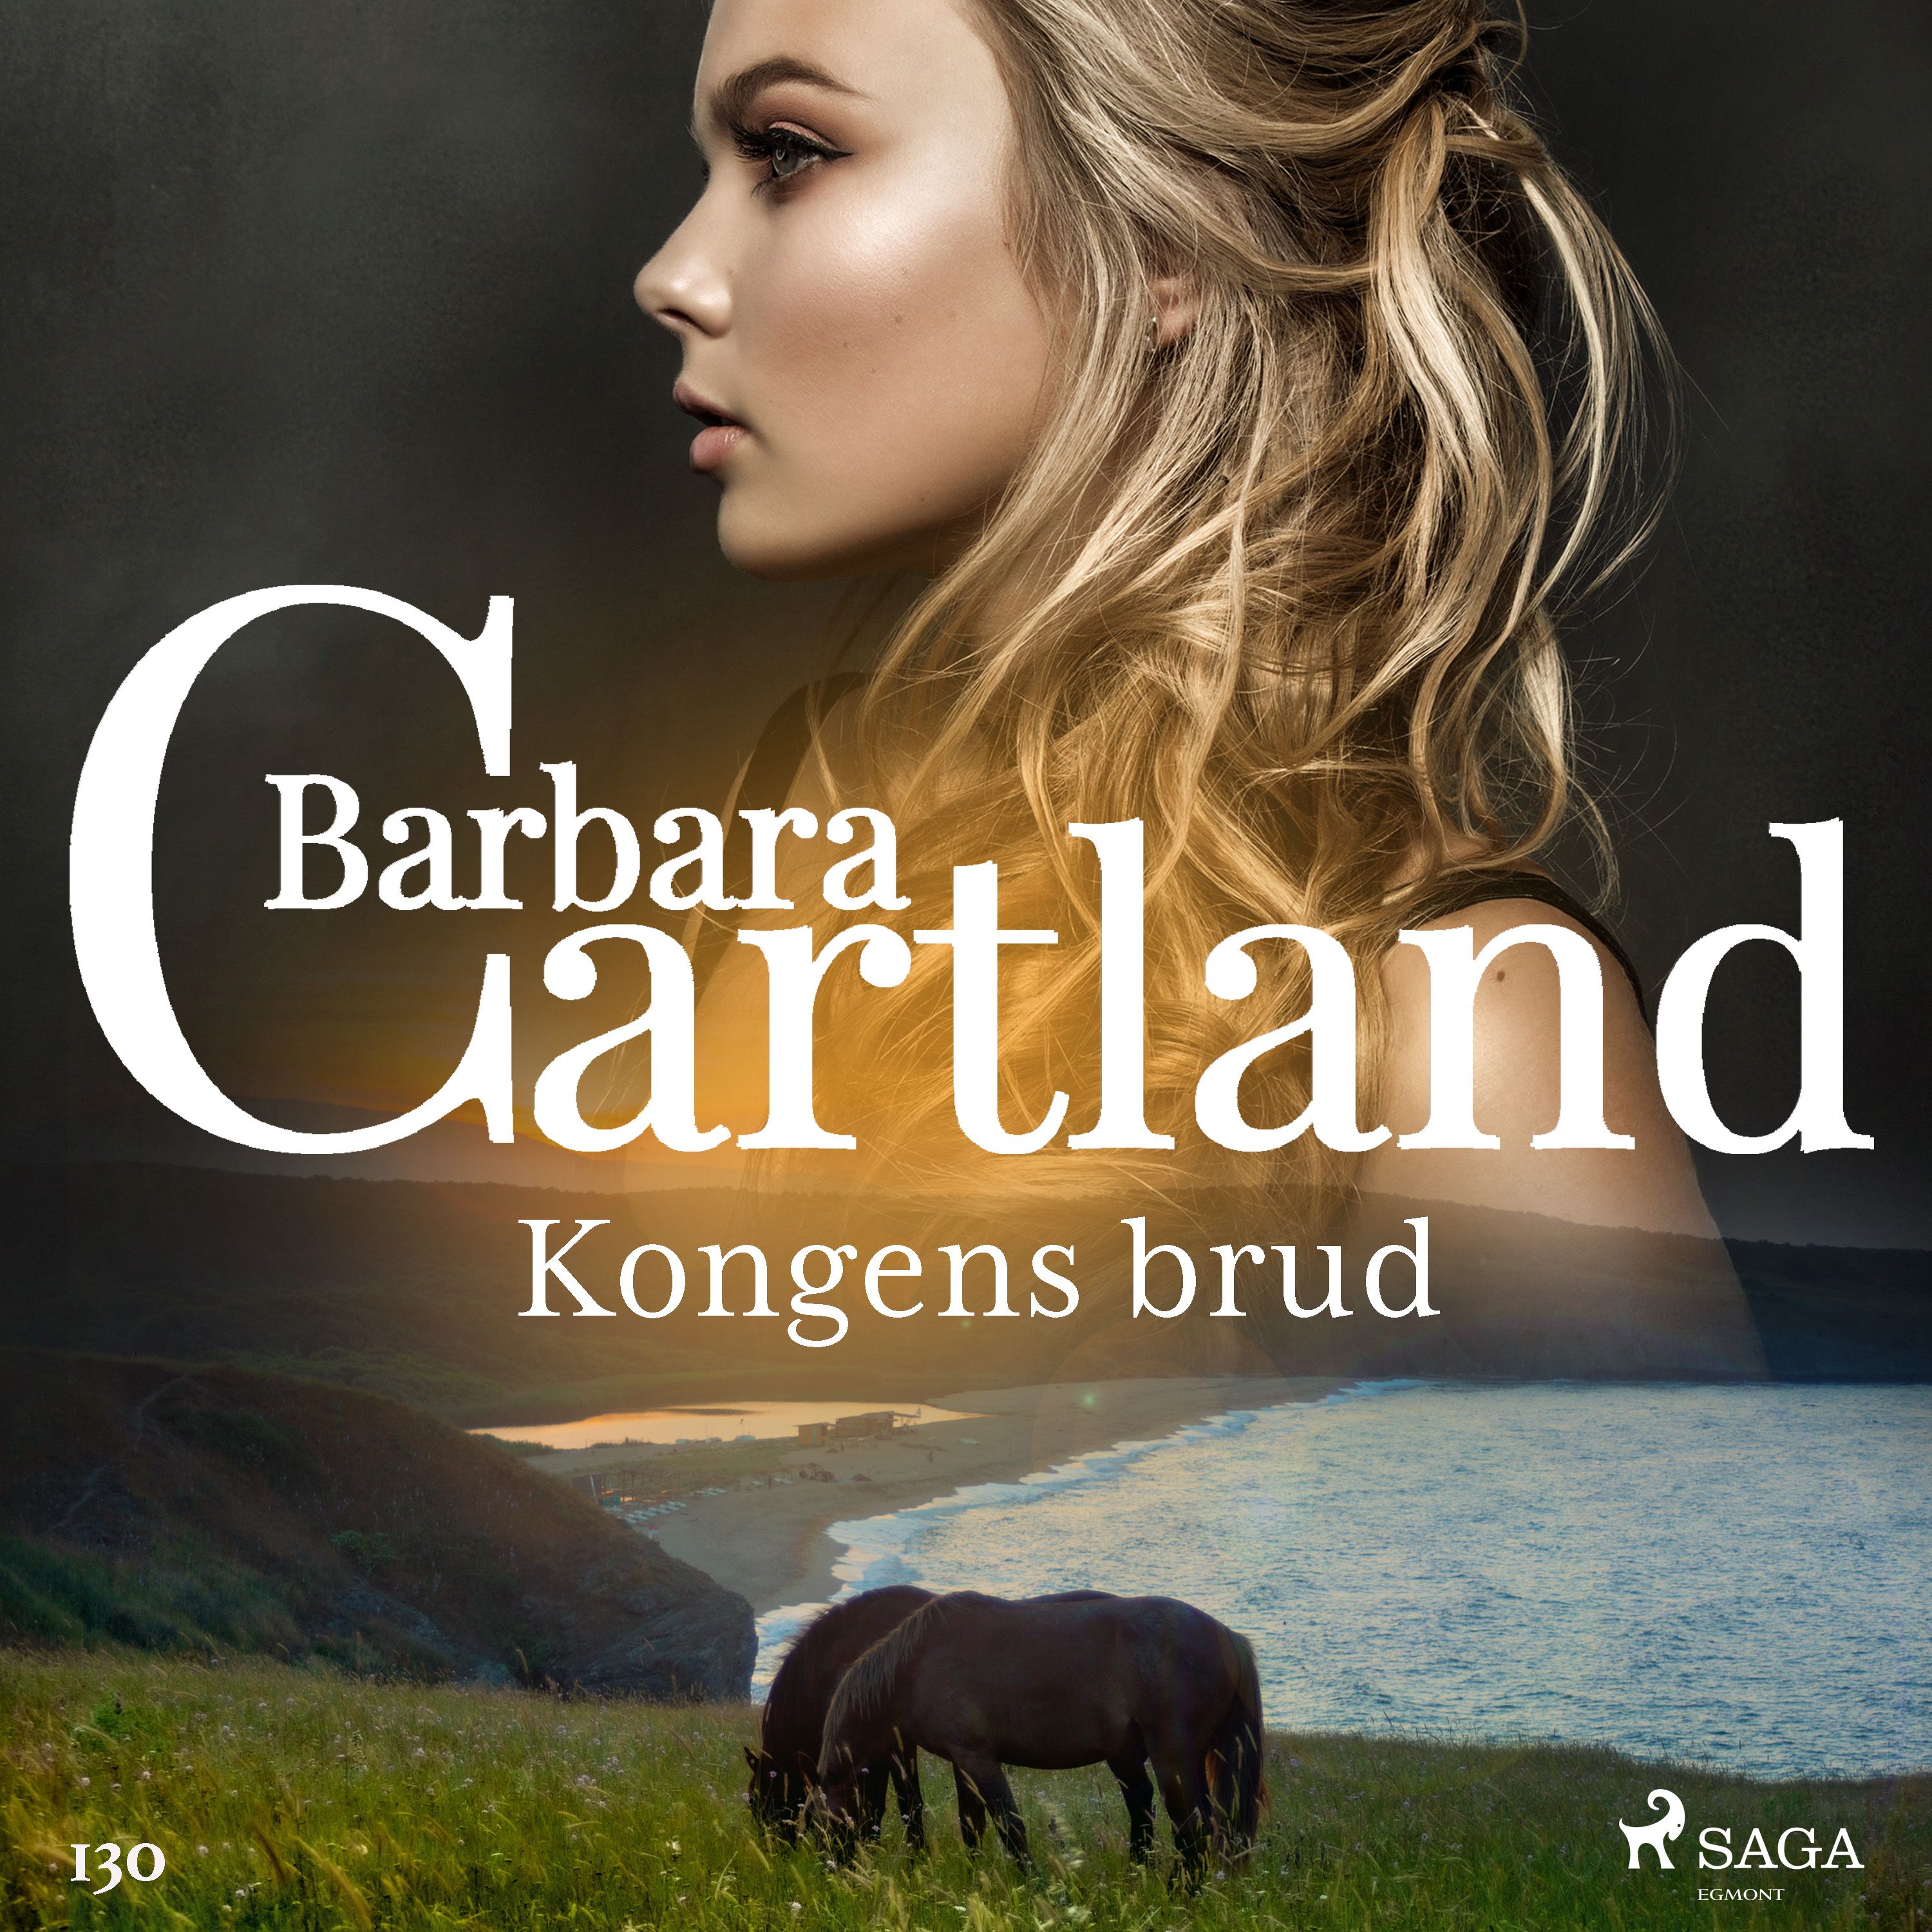 Kongens brud, ljudbok av Barbara Cartland